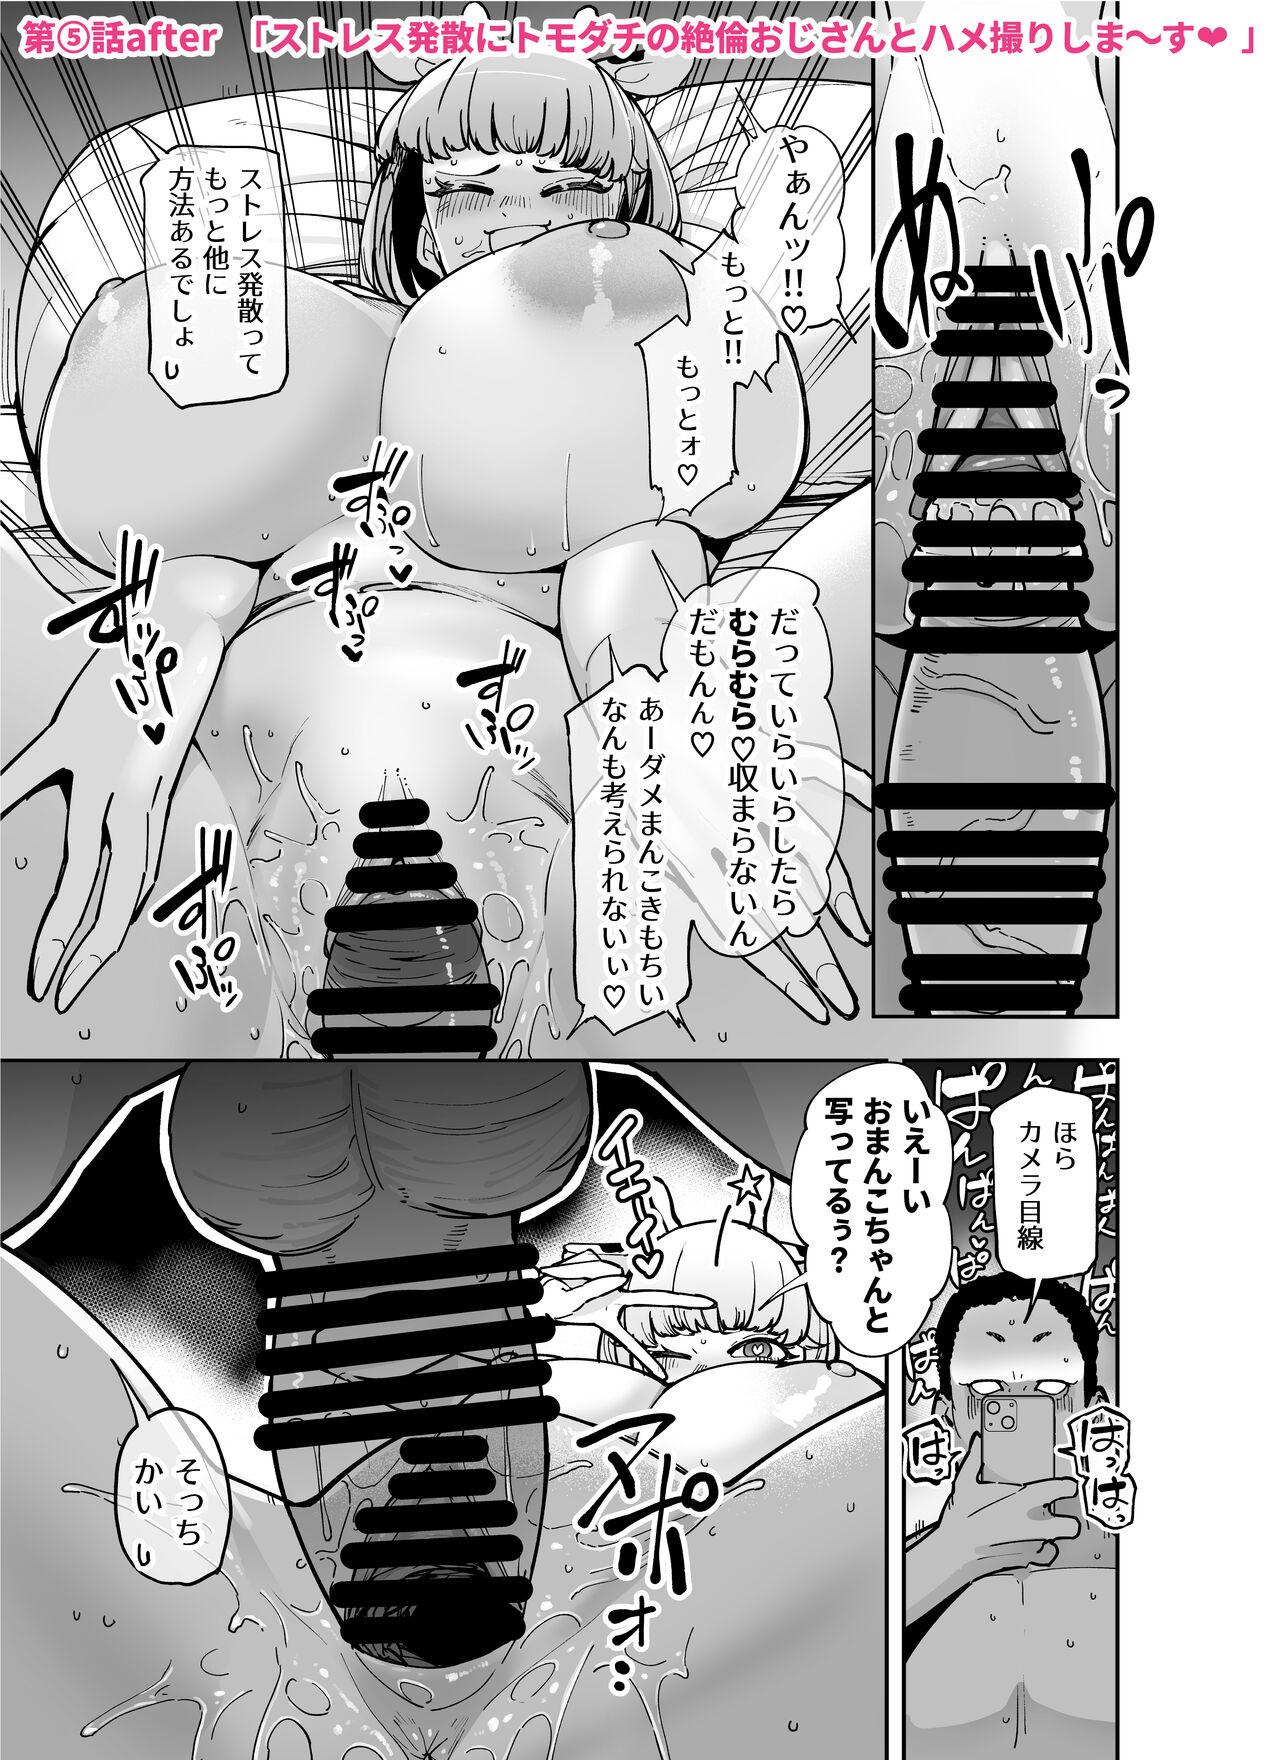 FANBOX matome Vol. 01 Hame rare daisuki bitchi-chan 21